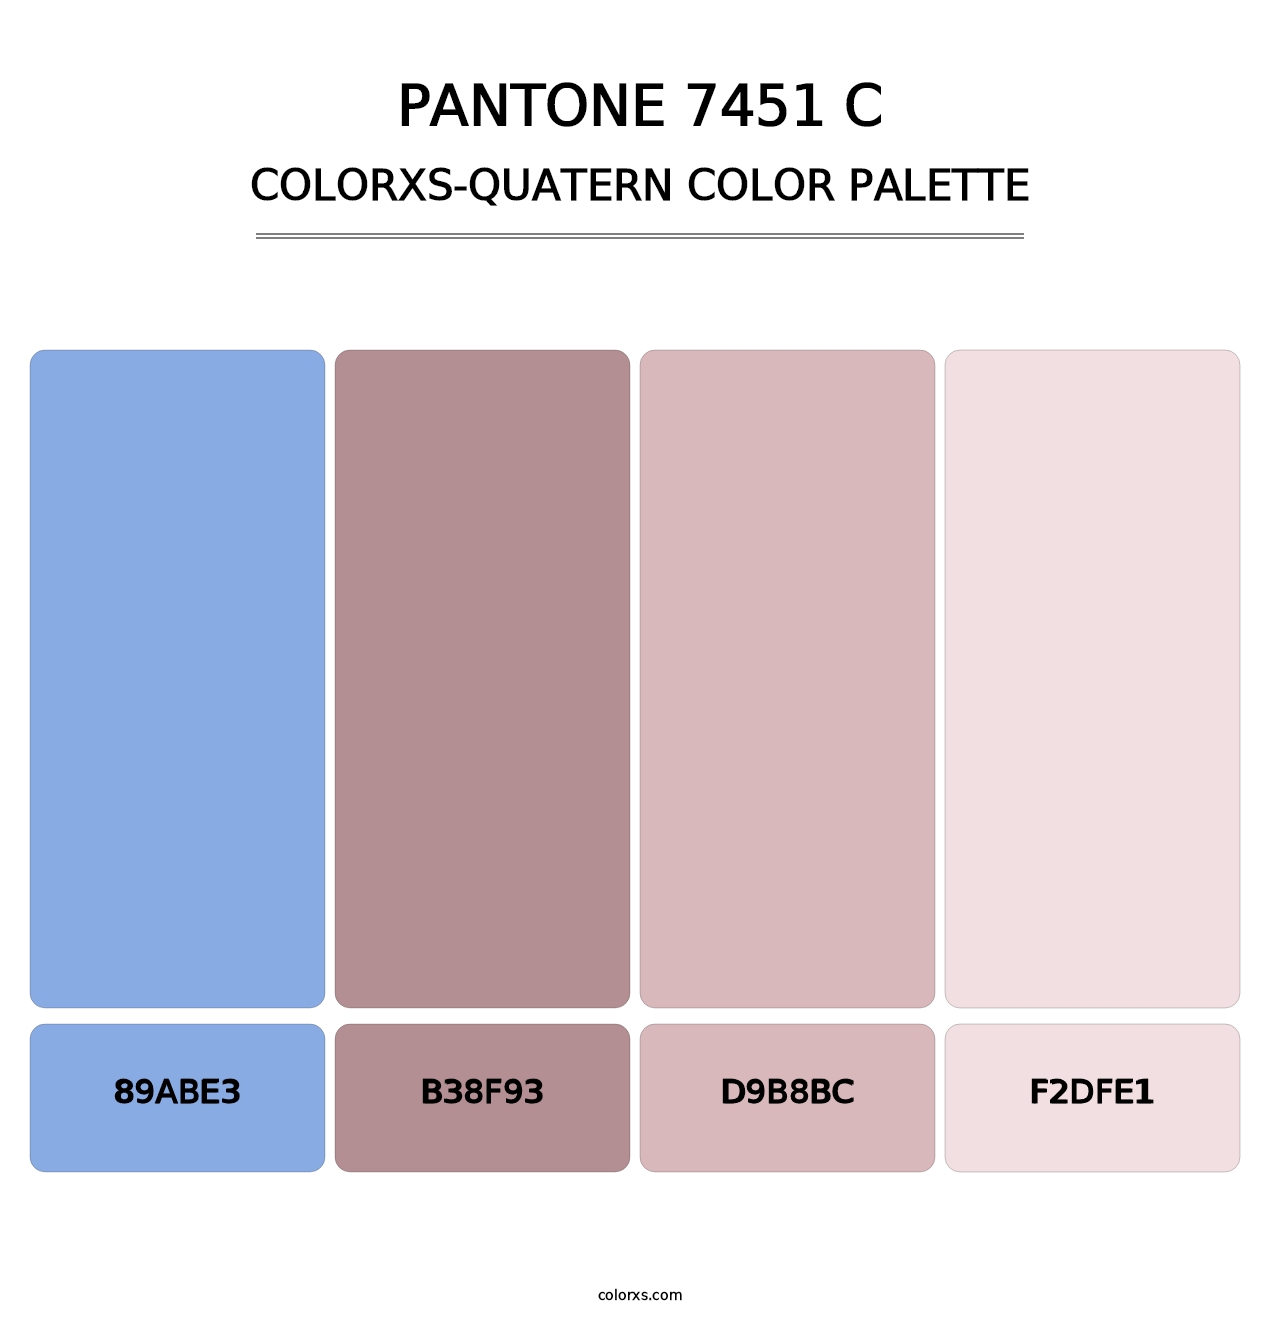 PANTONE 7451 C - Colorxs Quatern Palette